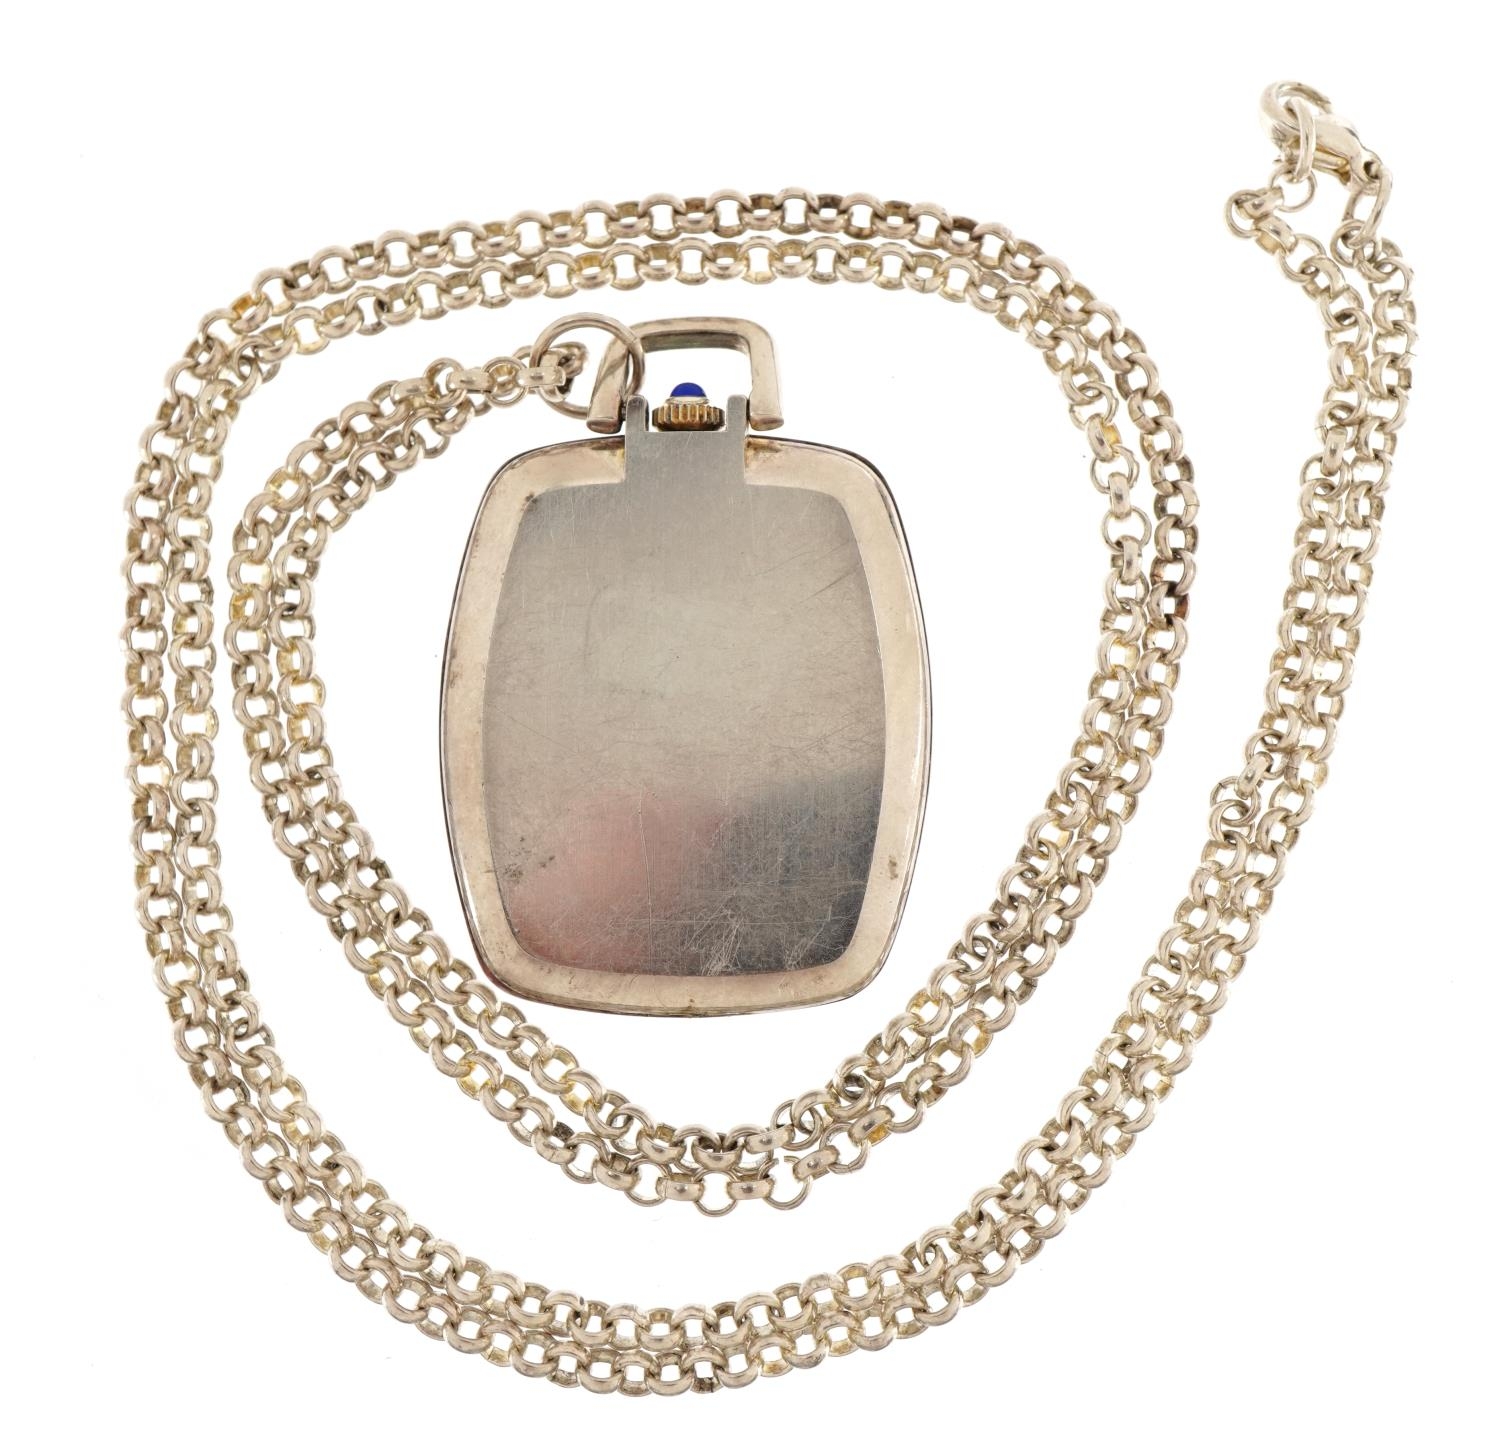 Gruen, gentlemen's open face pocket watch on a white metal necklace, 32mm wide, 49.2g - Bild 3 aus 3